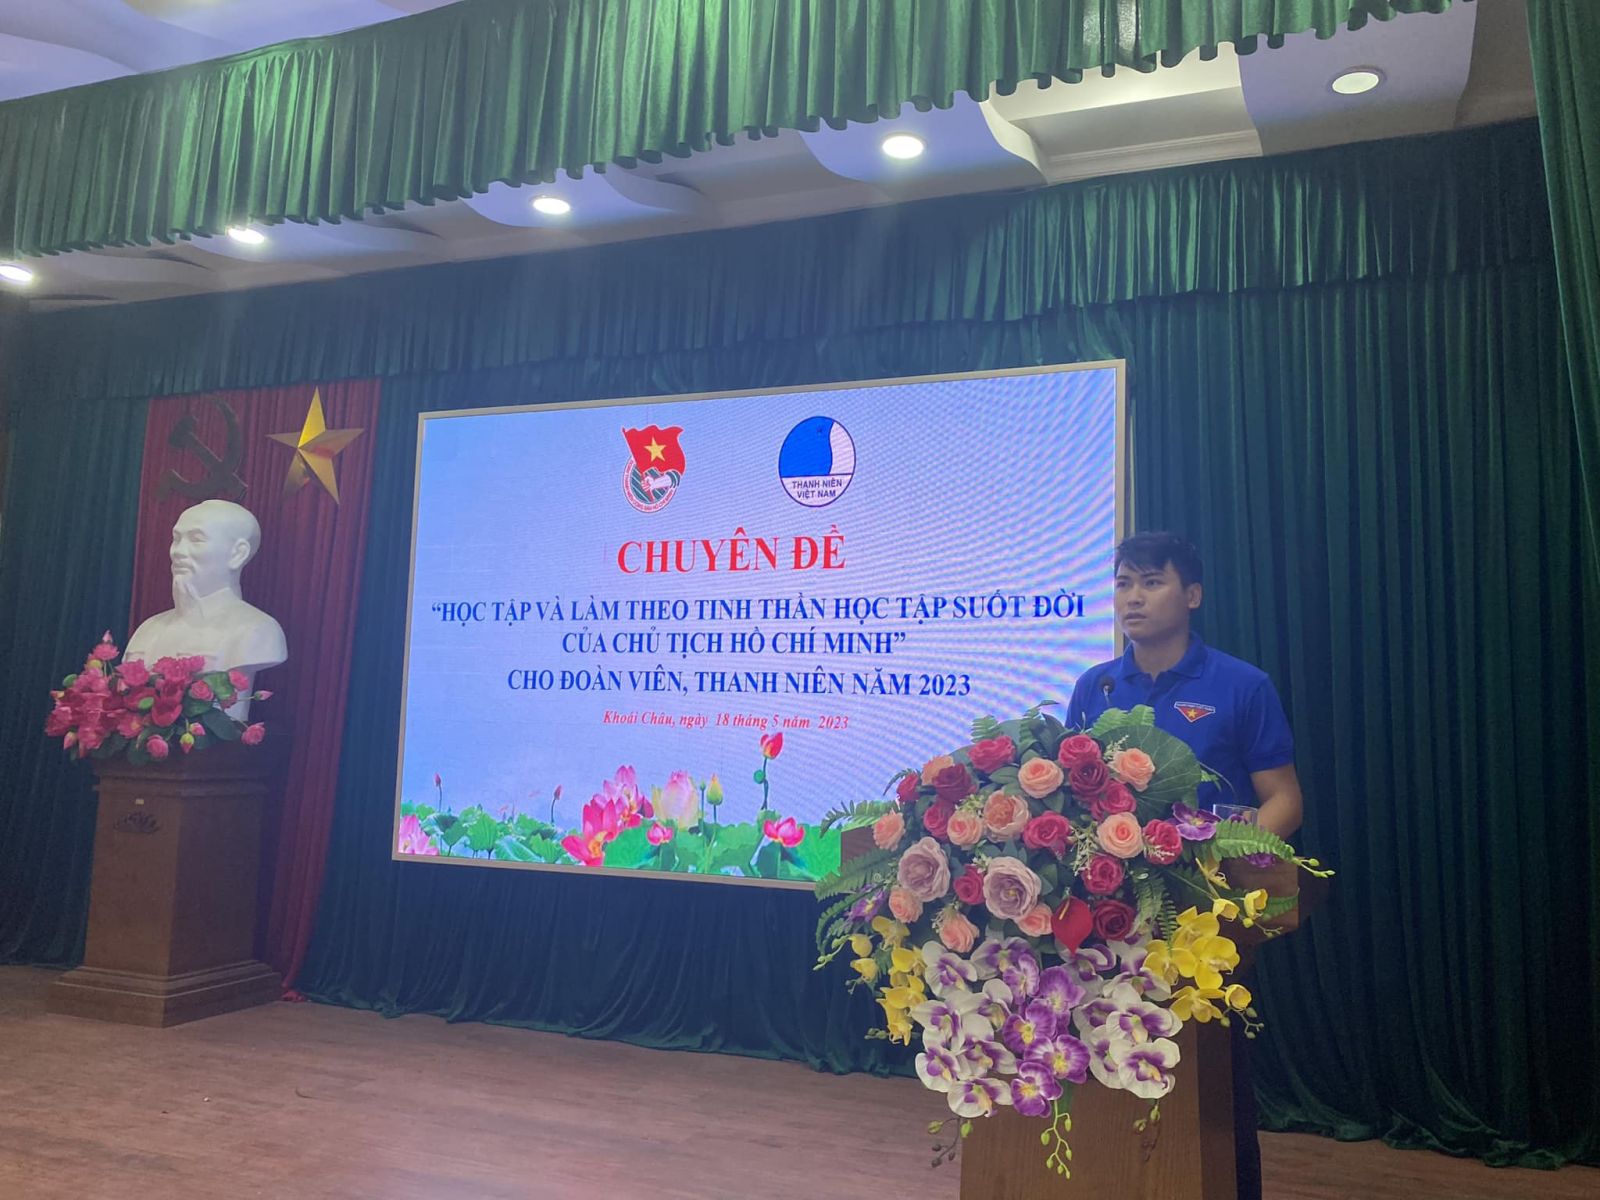 Huyện đoàn Khoái Châu tổ chức học tập, quán triệt, tuyên truyền chuyên đề học tập và làm theo tư tưởng, đạo đức, phong cách Hồ Chí Minh dành cho đoàn viên thanh niên năm 2023